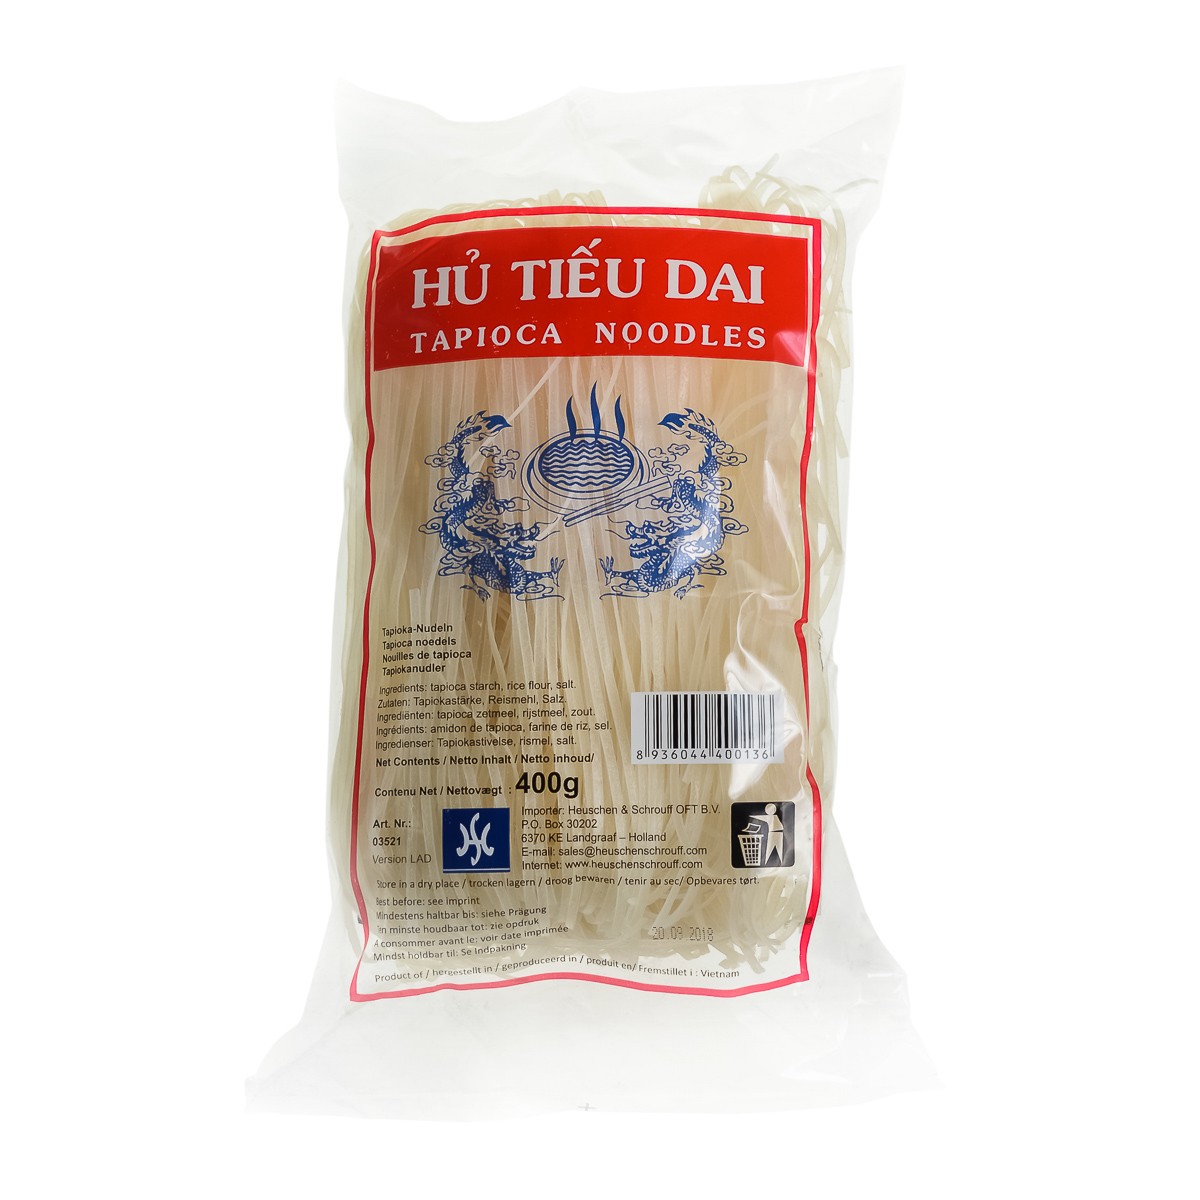 Alte tipuri de taitei - Taitei de tapioca HU TIEU DAI 400g, asianfood.ro